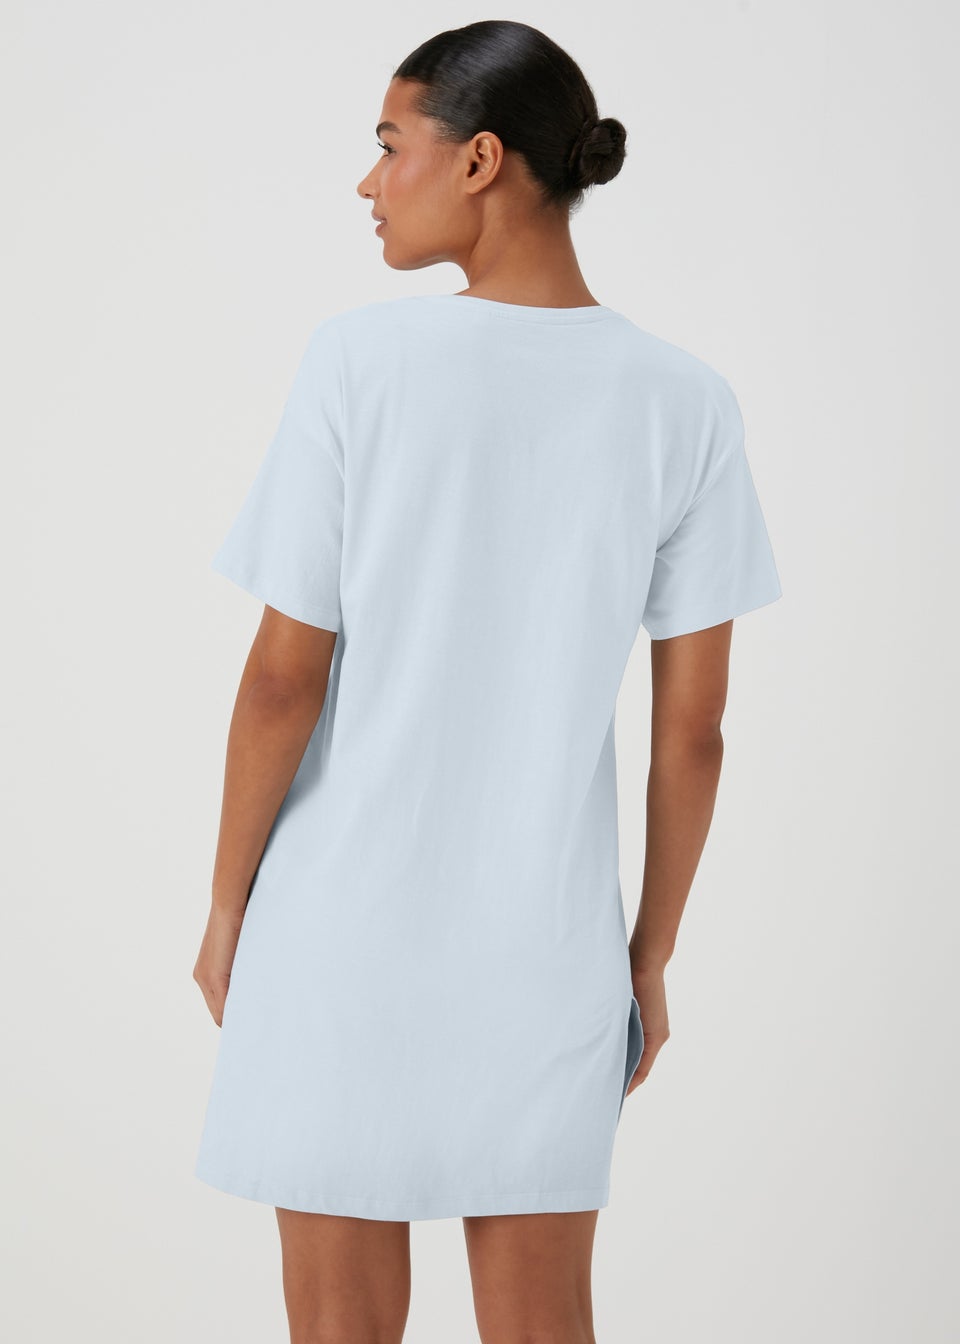 Garfield Blue Sleep T-Shirt